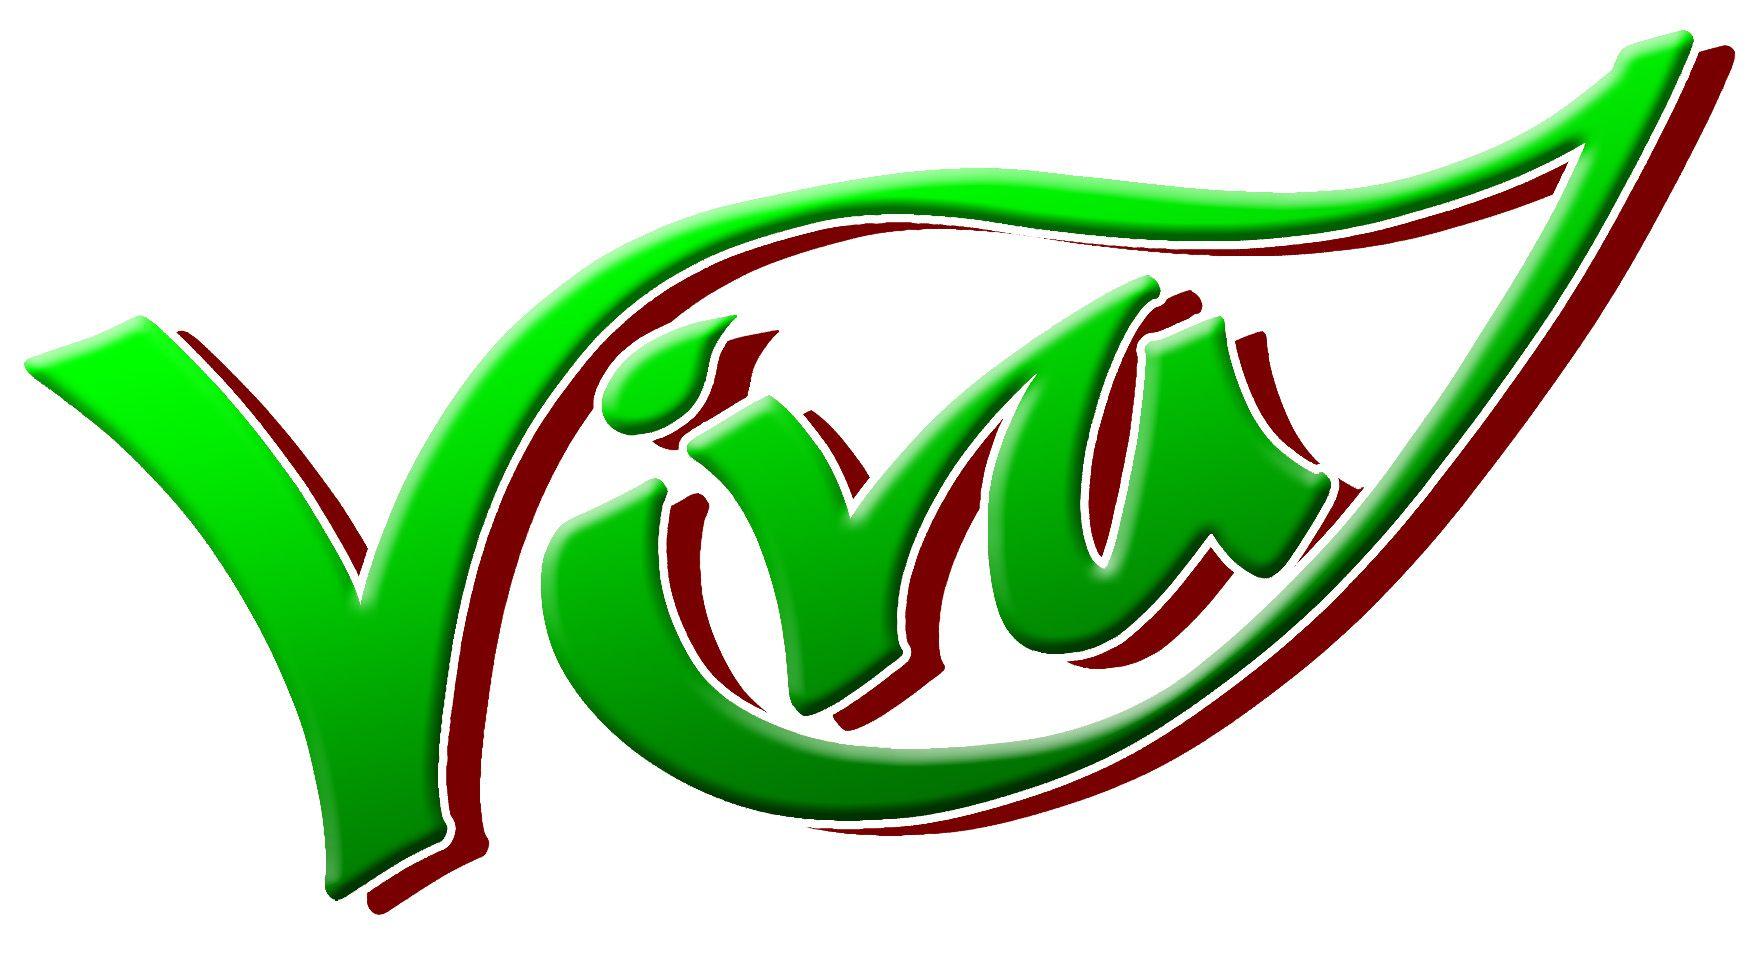 Viva Logo - Viva 4 Life & Raw Food Restaurant In Tacoma, WA